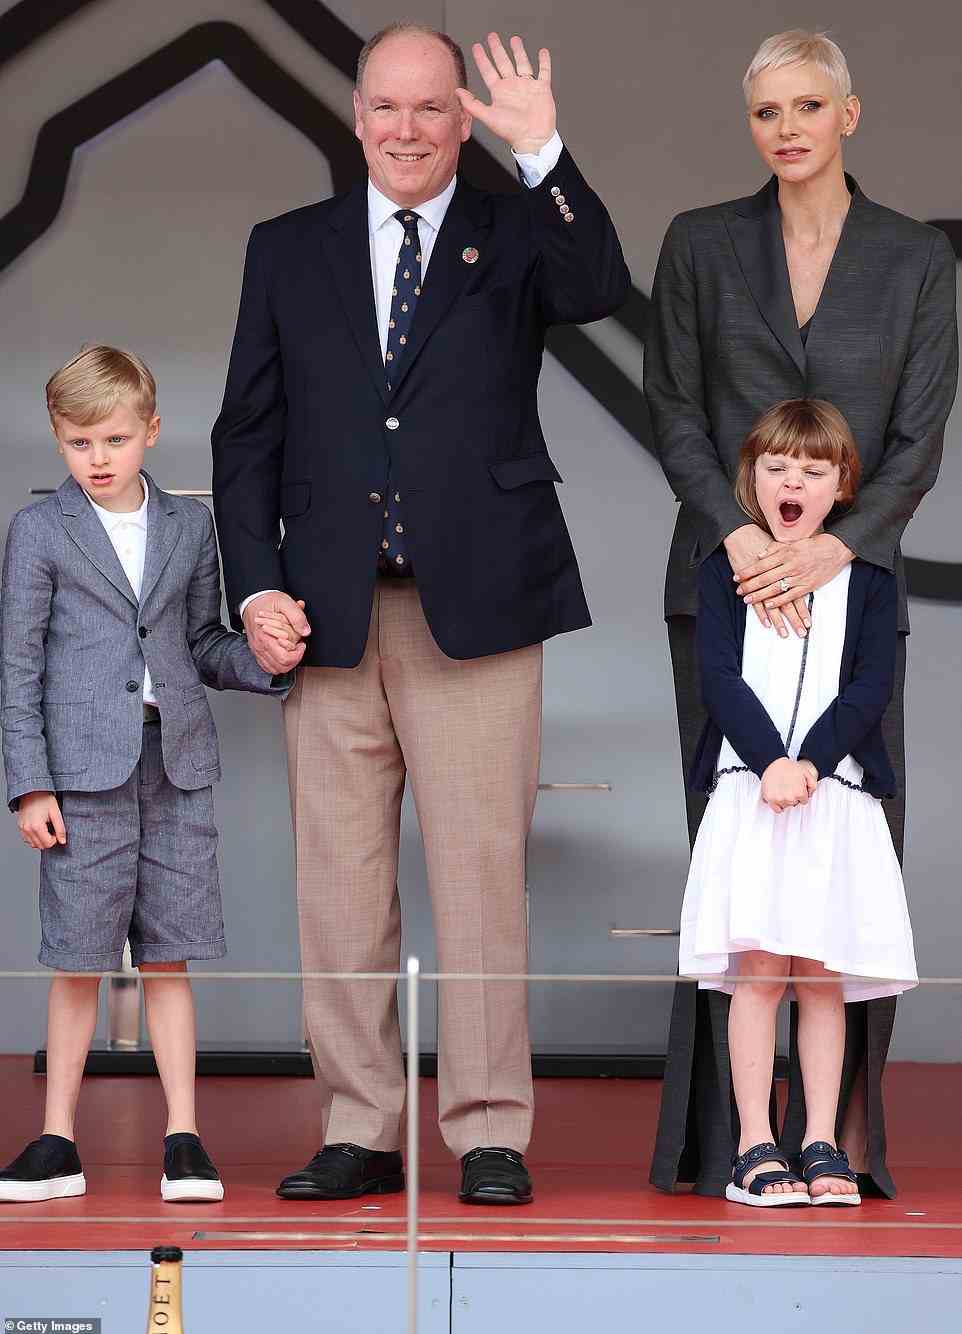 Charlene (im Bild rechts) wurde beim heutigen Monaco E-Prix öffentlich mit Ehemann Prinz Albert (links) und ihren siebenjährigen Zwillingen Prinz Jacques (ganz links) und Prinzessin Gabriella (rechts) fotografiert